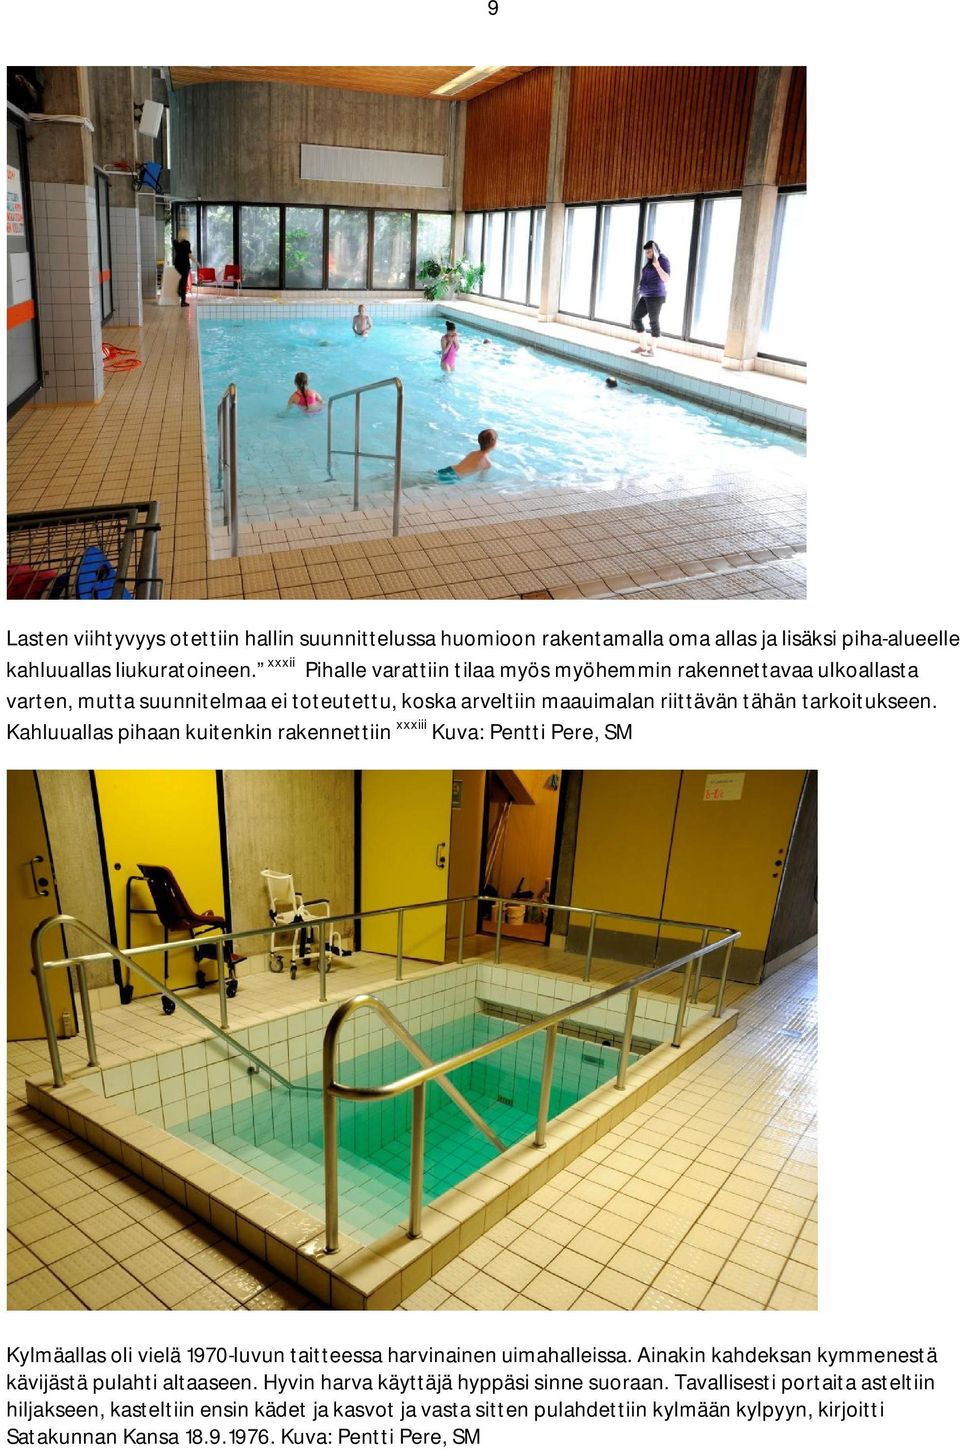 Kahluuallas pihaan kuitenkin rakennettiin xxxiii Kuva: Pentti Pere, SM Kylmäallas oli vielä 1970-luvun taitteessa harvinainen uimahalleissa.